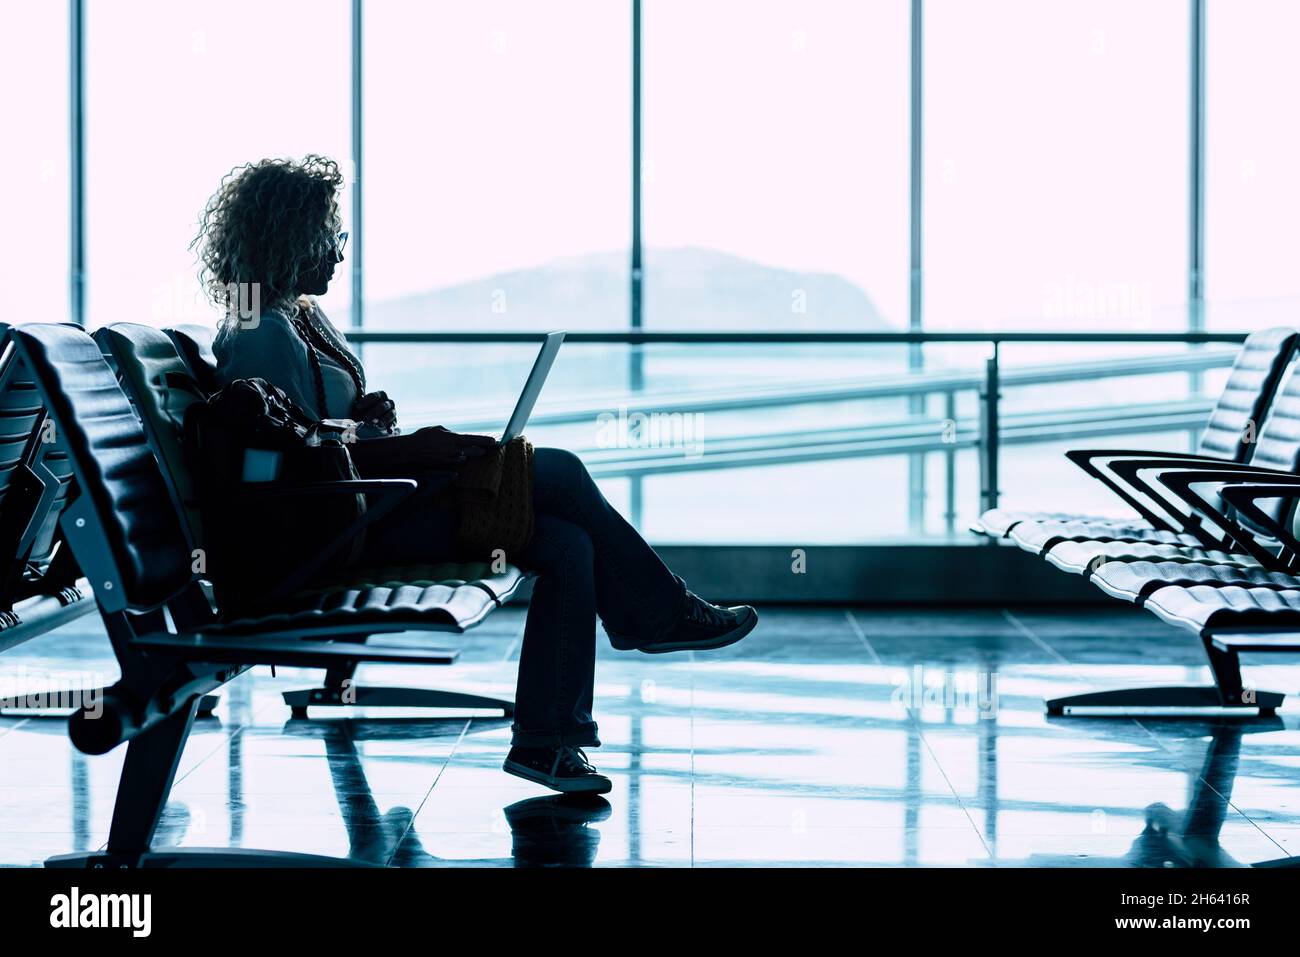 une femme s'assoit seule à la porte de l'aéroport en attendant le vol pour voyager - voyage d'affaires ou de vacances - fenêtre lumineuse en arrière-plan - femme assise et attente retard départ avion Banque D'Images